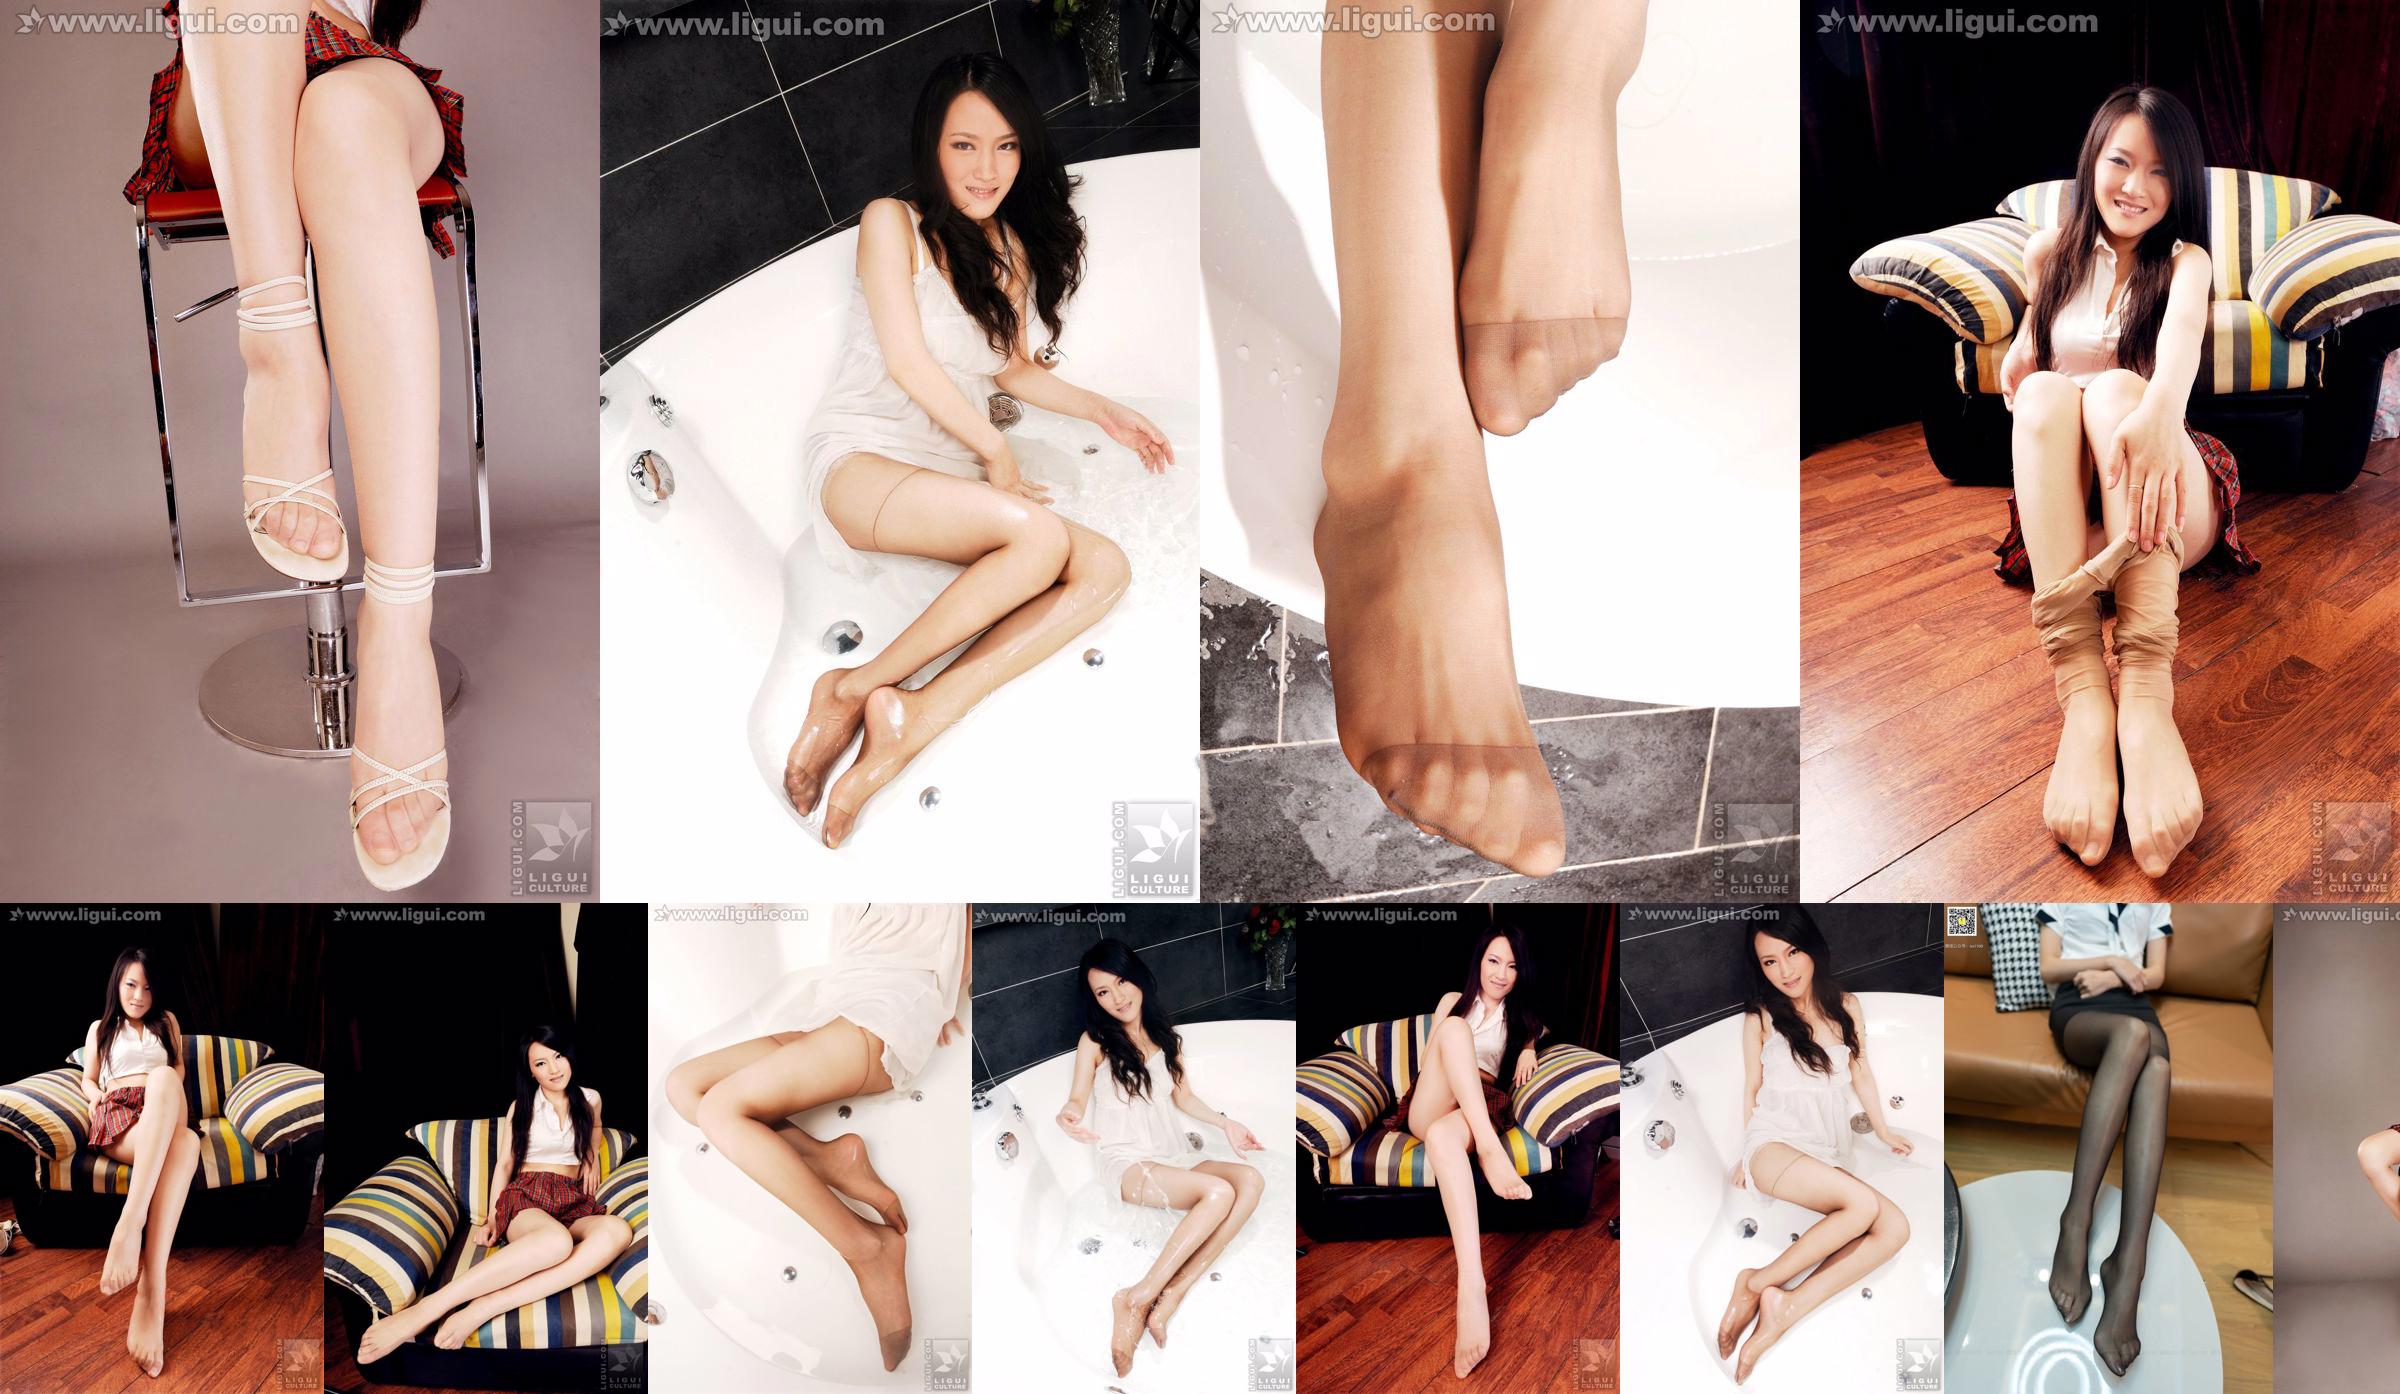 Model Wen Ting "Stoking Daging Manis dan Lucu dengan Sepatu Hak Tinggi" [丽 柜 LiGui] Foto kaki indah dan kaki giok No.38e265 Halaman 3